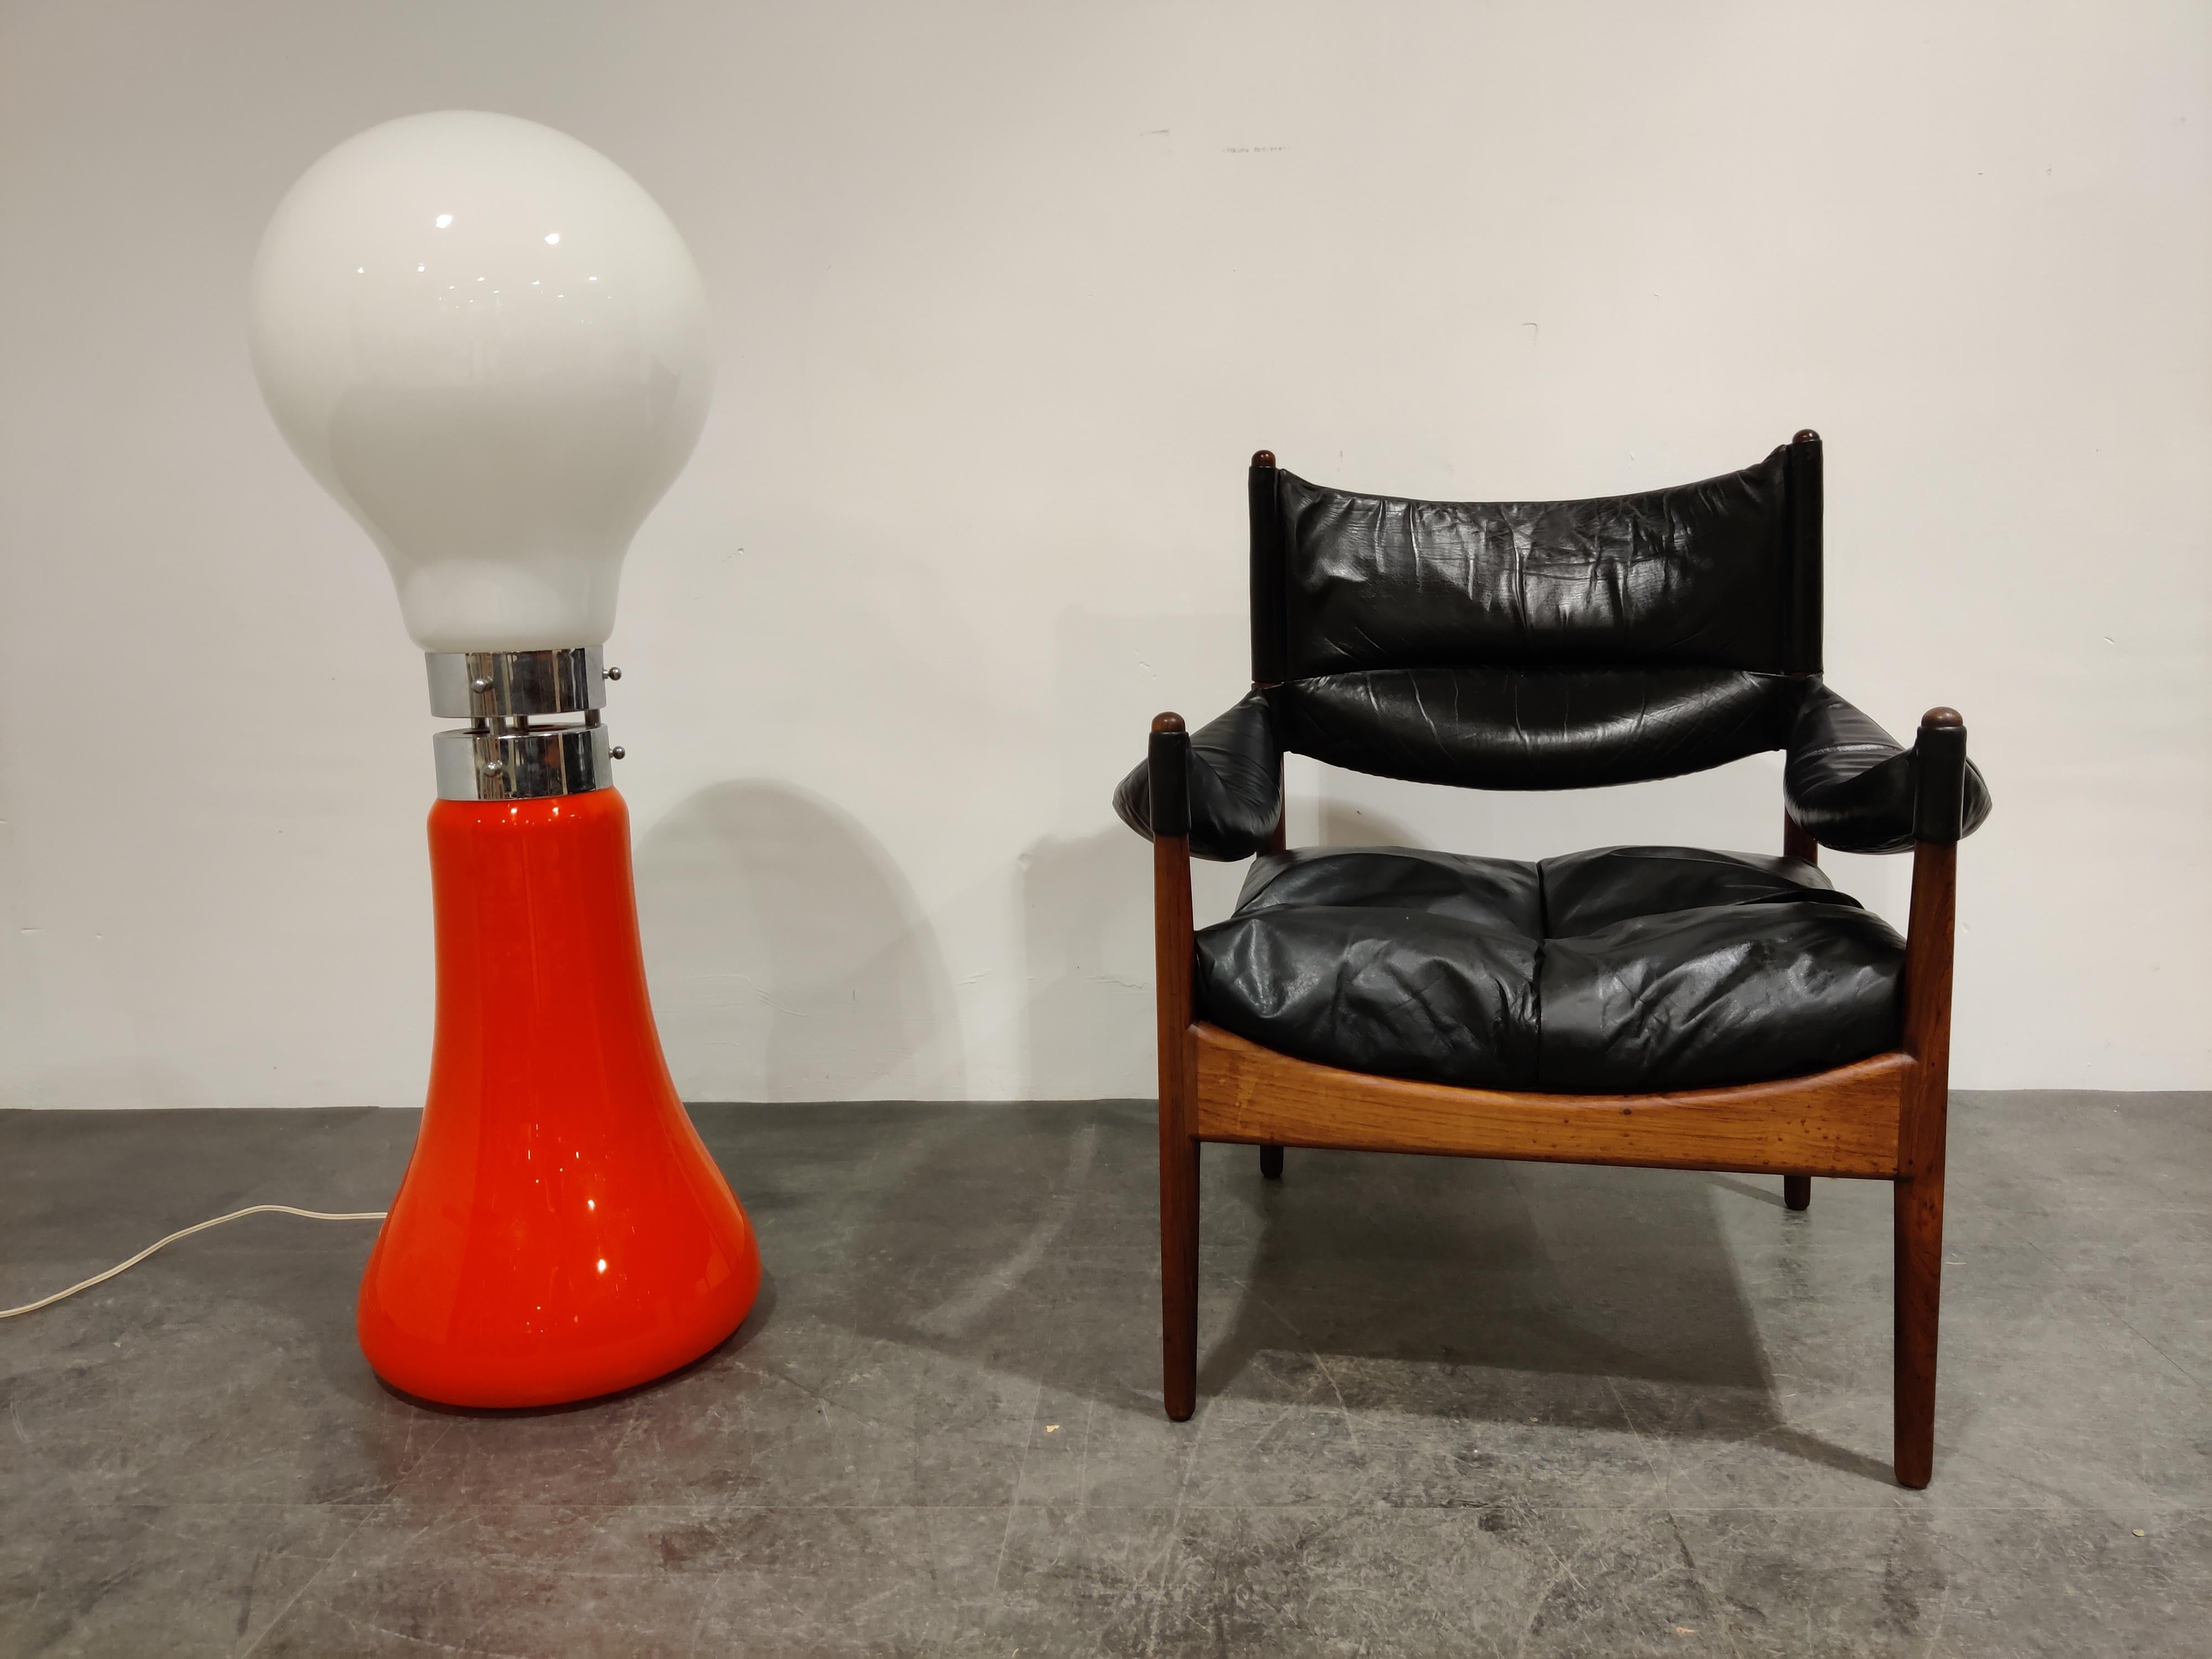 Zeitlose Stehleuchte Modell 'birillo' entworfen von Carlo Nason für AV Mazzega. 

Schöne Space Age orange Farbe mit einem weißen Glas Birne förmigen Schatten. Die gesamte Leuchte besteht aus Glas mit verchromten Mittelteilen. 

Die Lampe